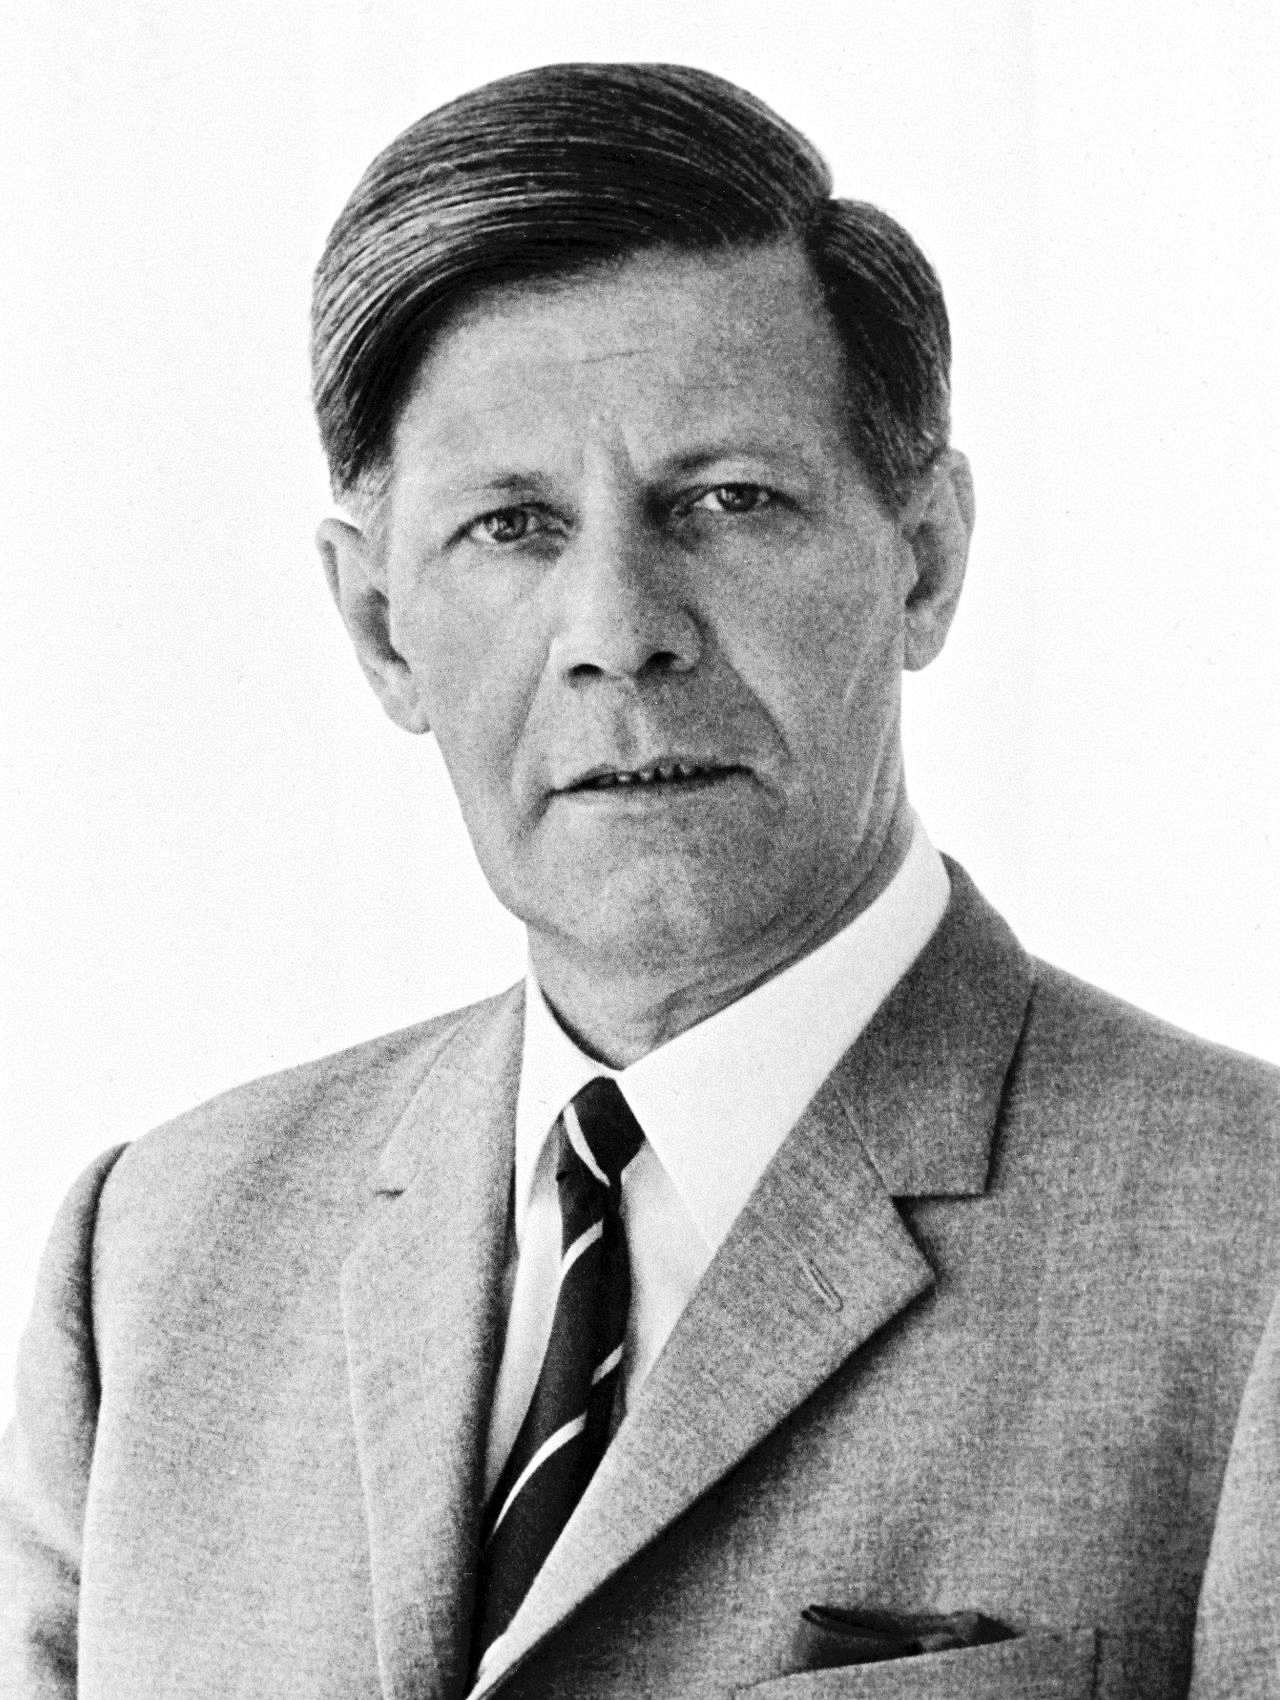 Offizielles Porträt von Helmut Schmidt, Bundesminister der Verteidigung (1969-1972).